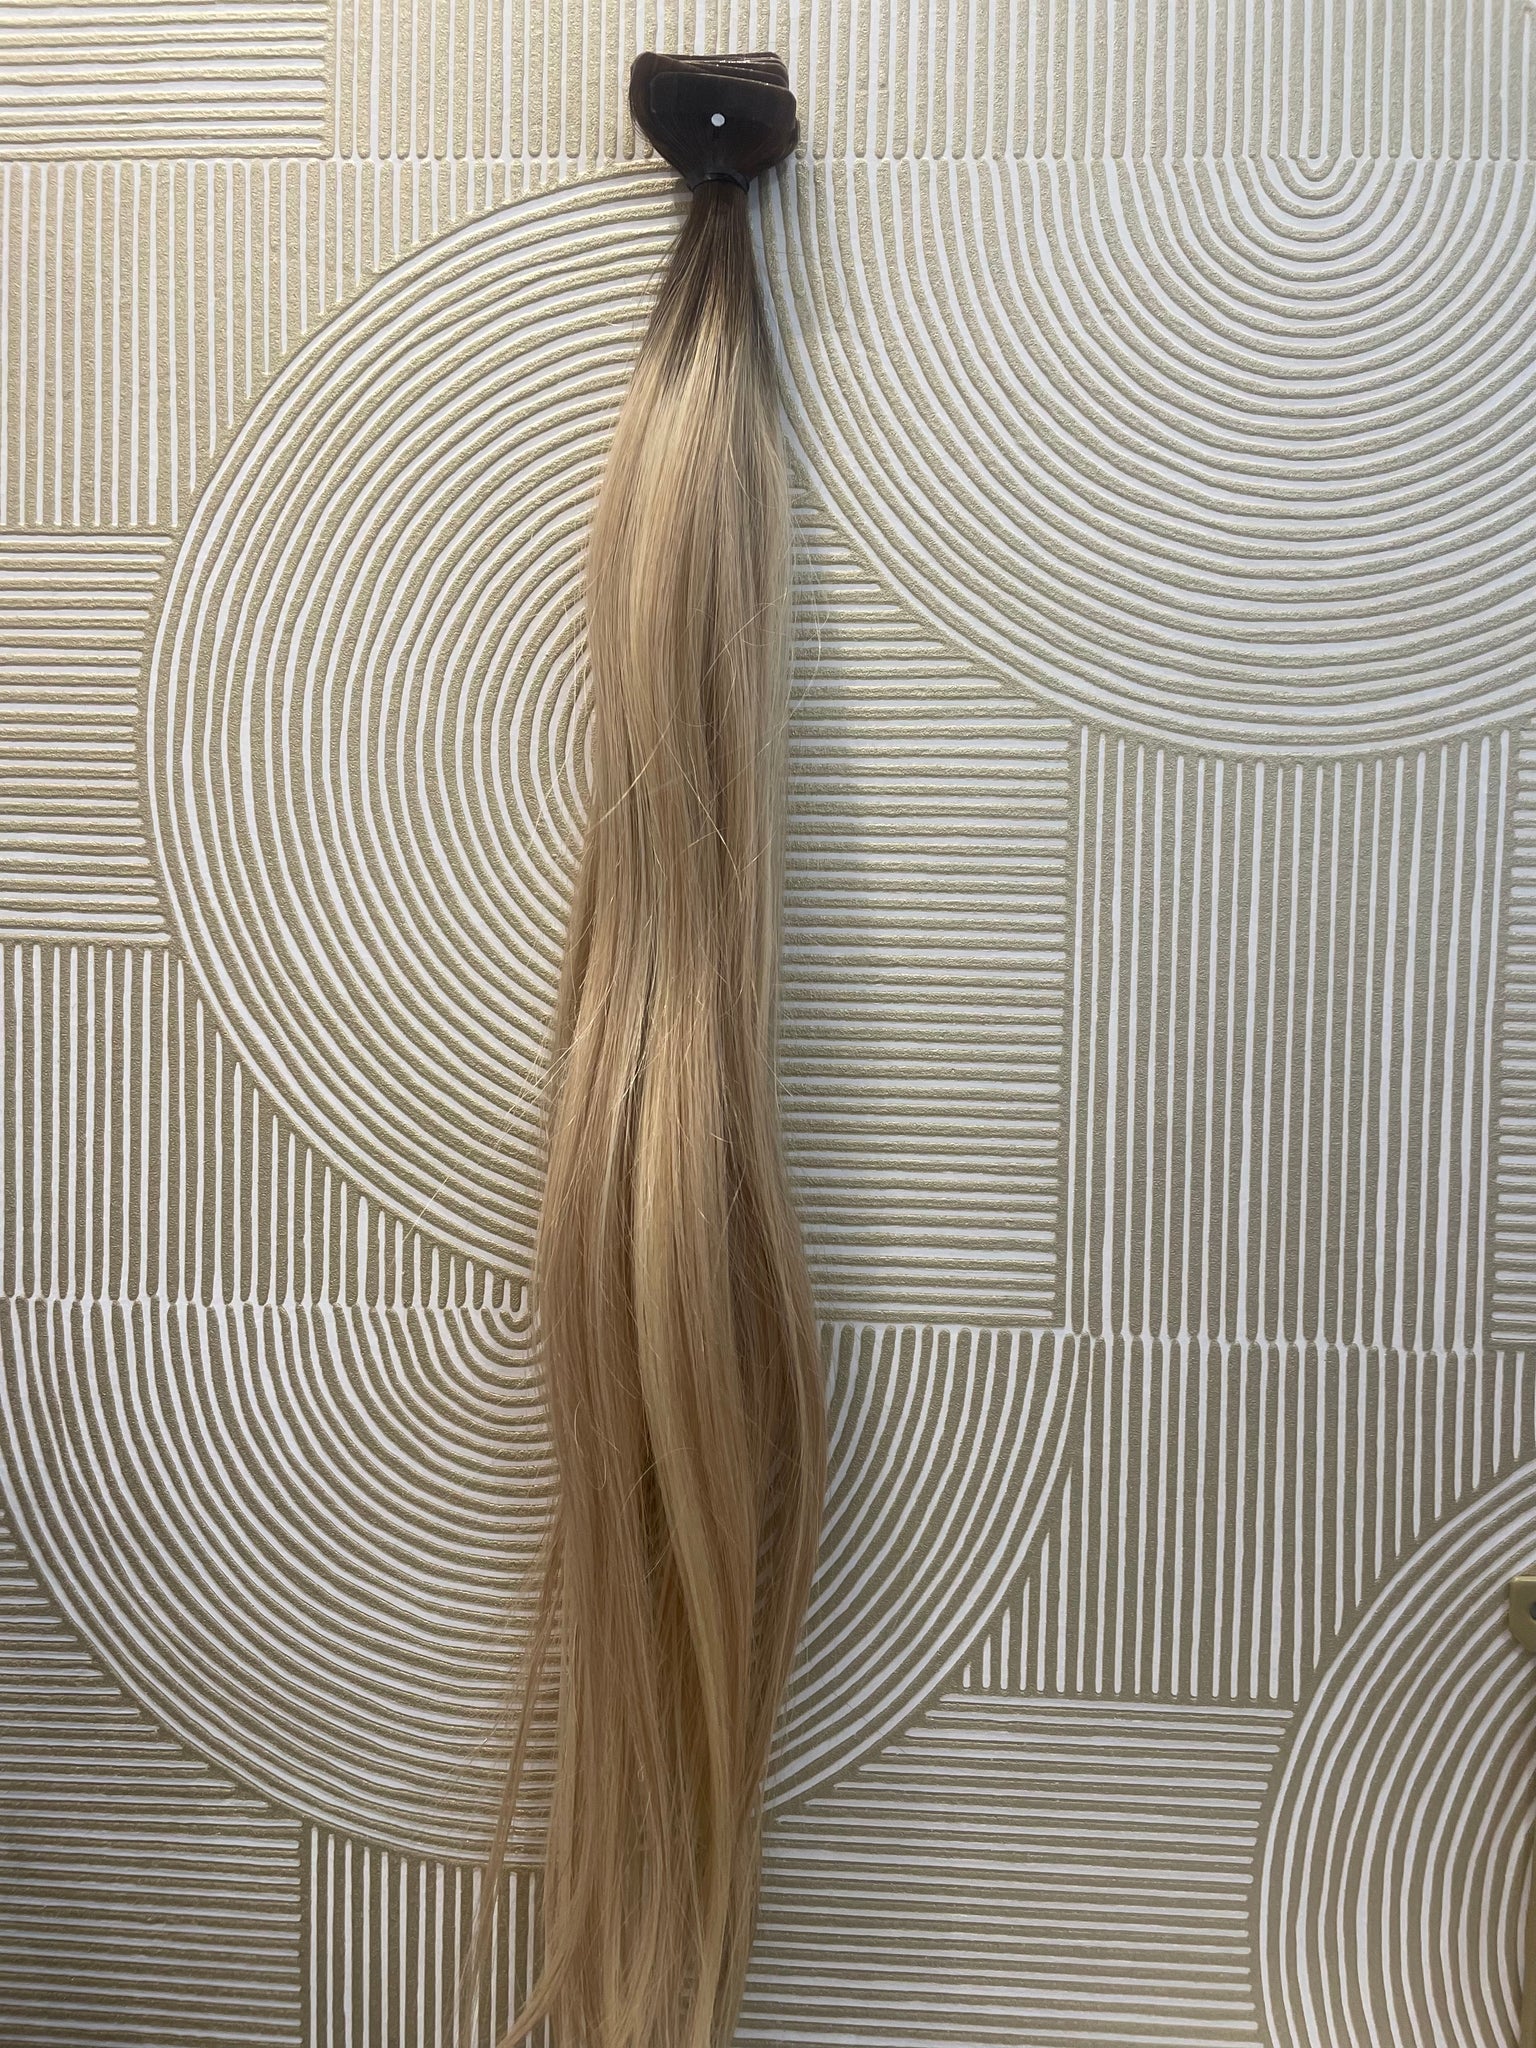 Extensions Tape 50 gram (2-6c-5qB) 55 cm European hair